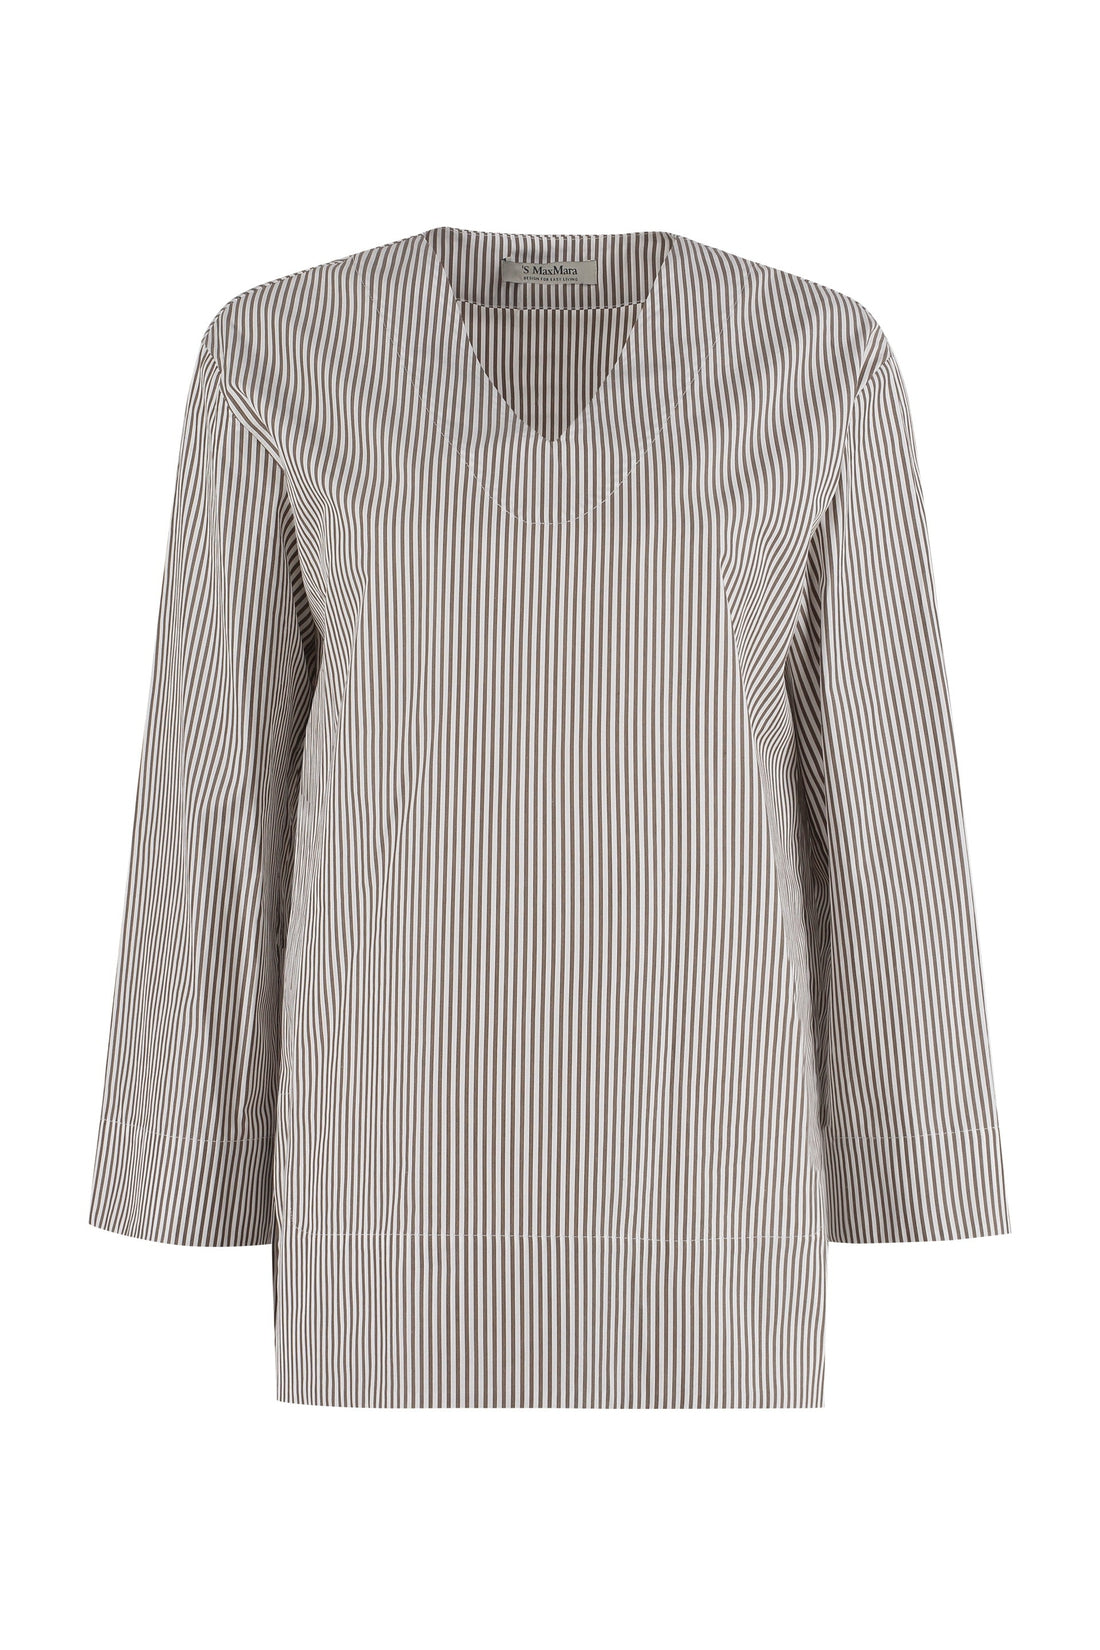 S MAX MARA-OUTLET-SALE-Affori striped cotton tunic-shirt-ARCHIVIST